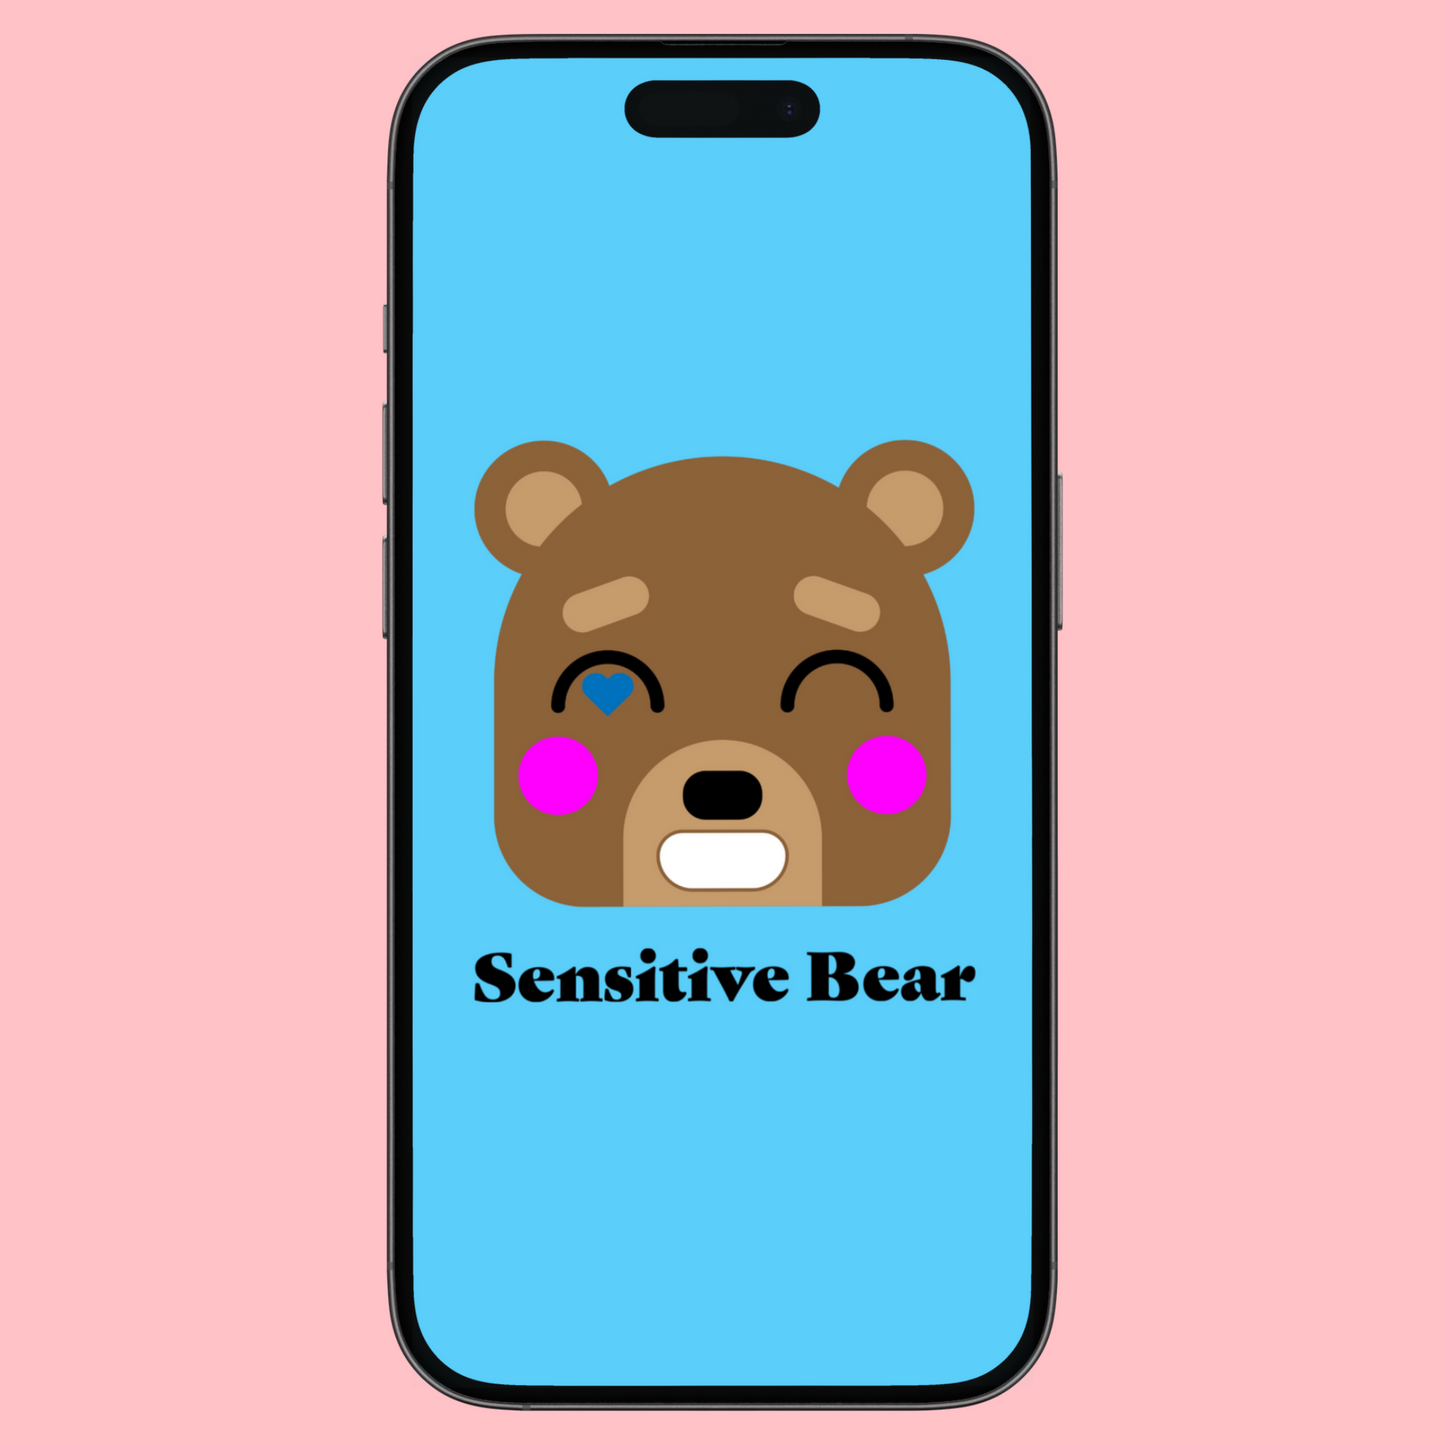 Sensitive Bear Fun Colors iPhone Wallpaper